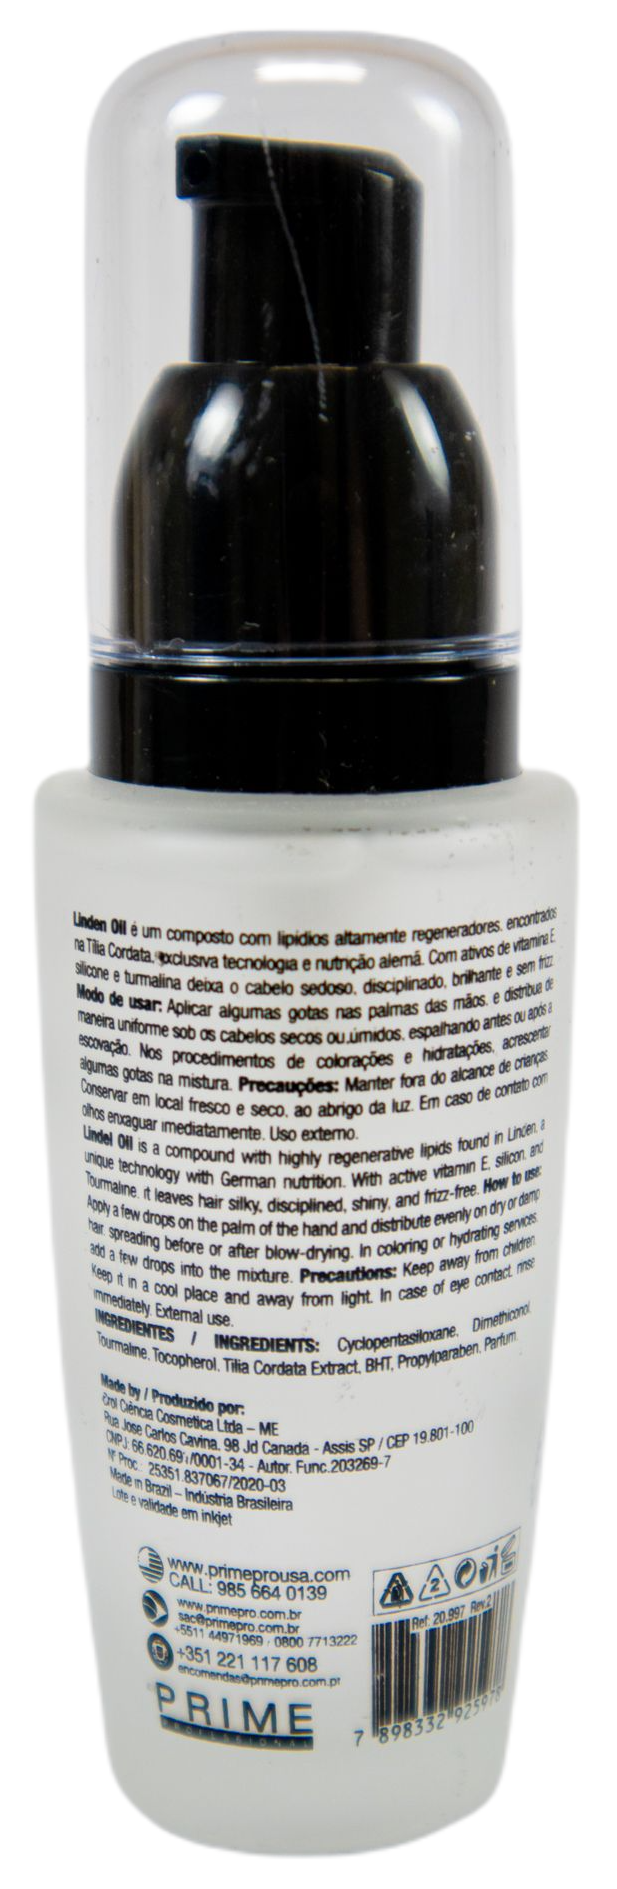 Prime Pro Extreme Brazilian Keratin Treatment Profit Plex Professional Treatment Kit - Prime Pro